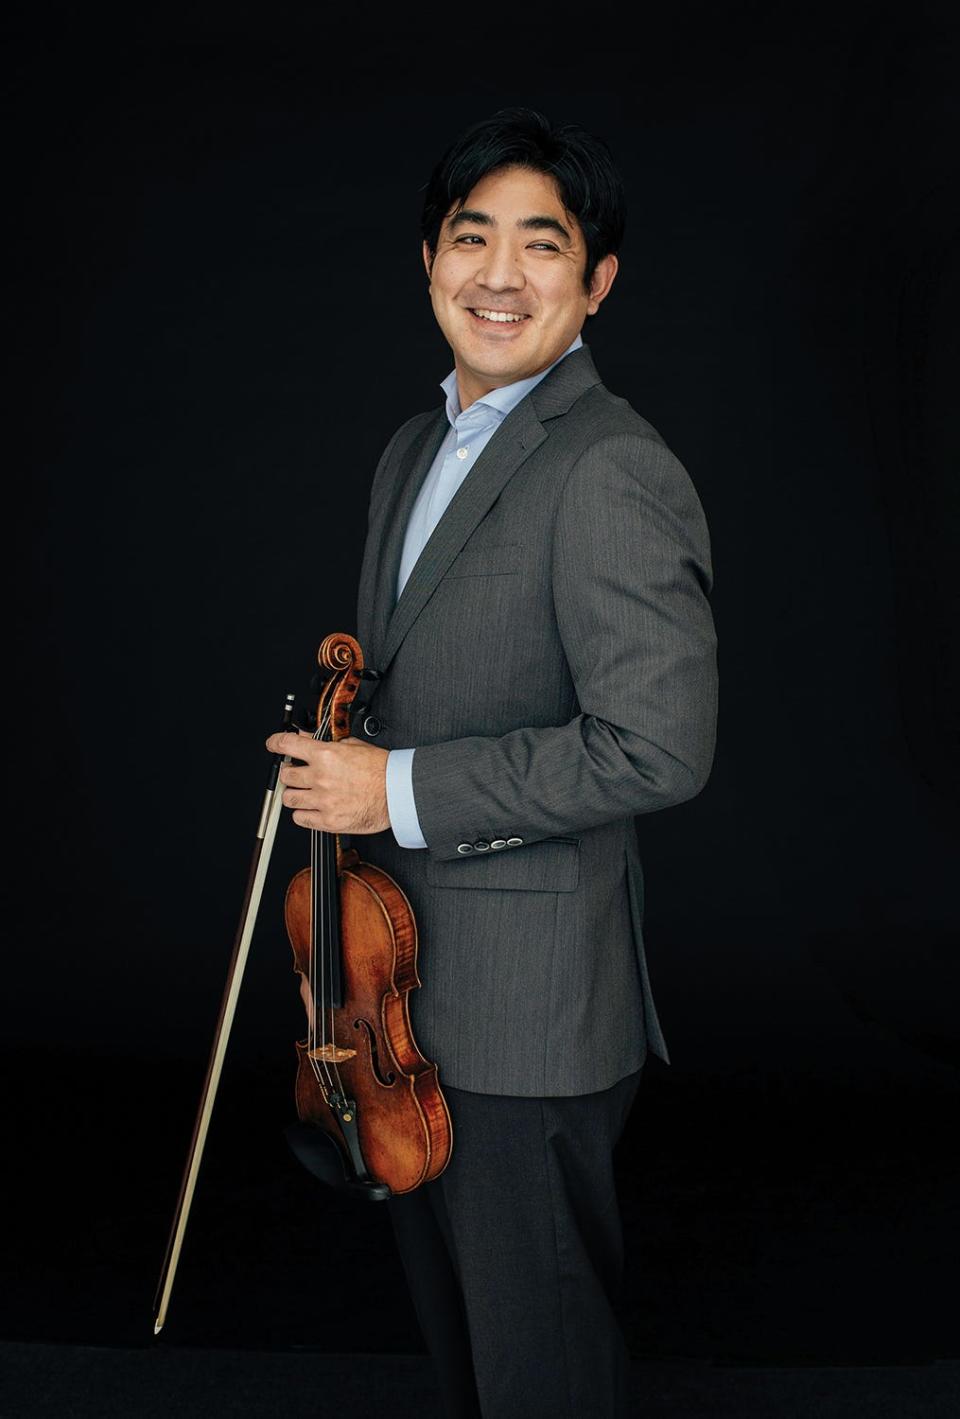 Jun Iwasaki is concertmaster of the Kansas City Symphony.